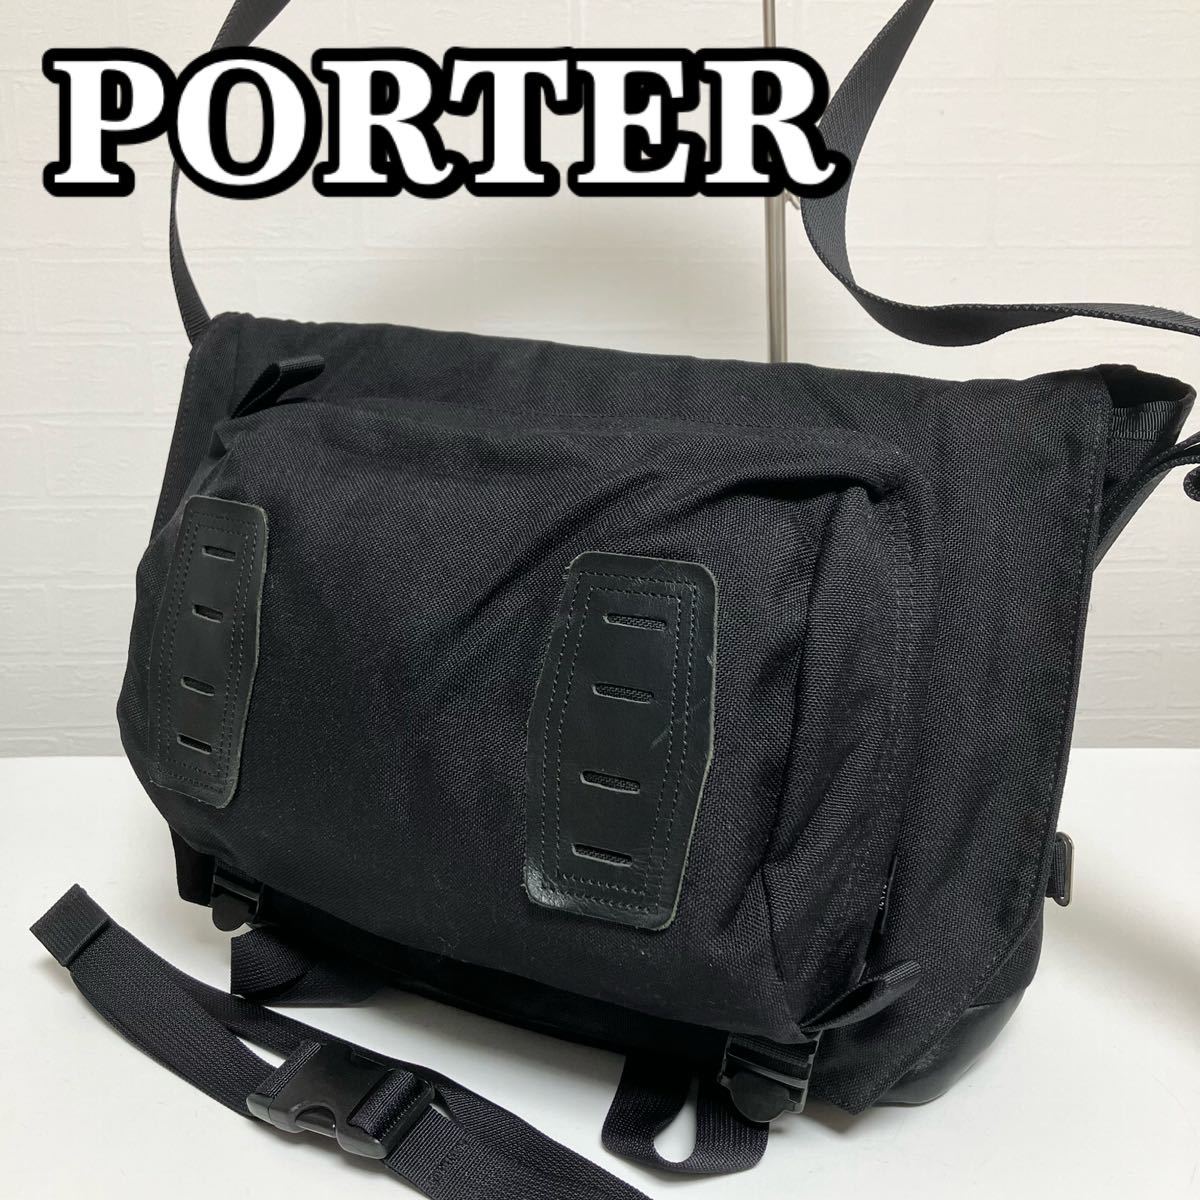 PORTER ポーター WILDERNESS CYCLE MESSENGER BAG(L) ウィルダネスサイクルメッセンジャーバッグ Lサイズ ショルダーバッグ ブラック 黒